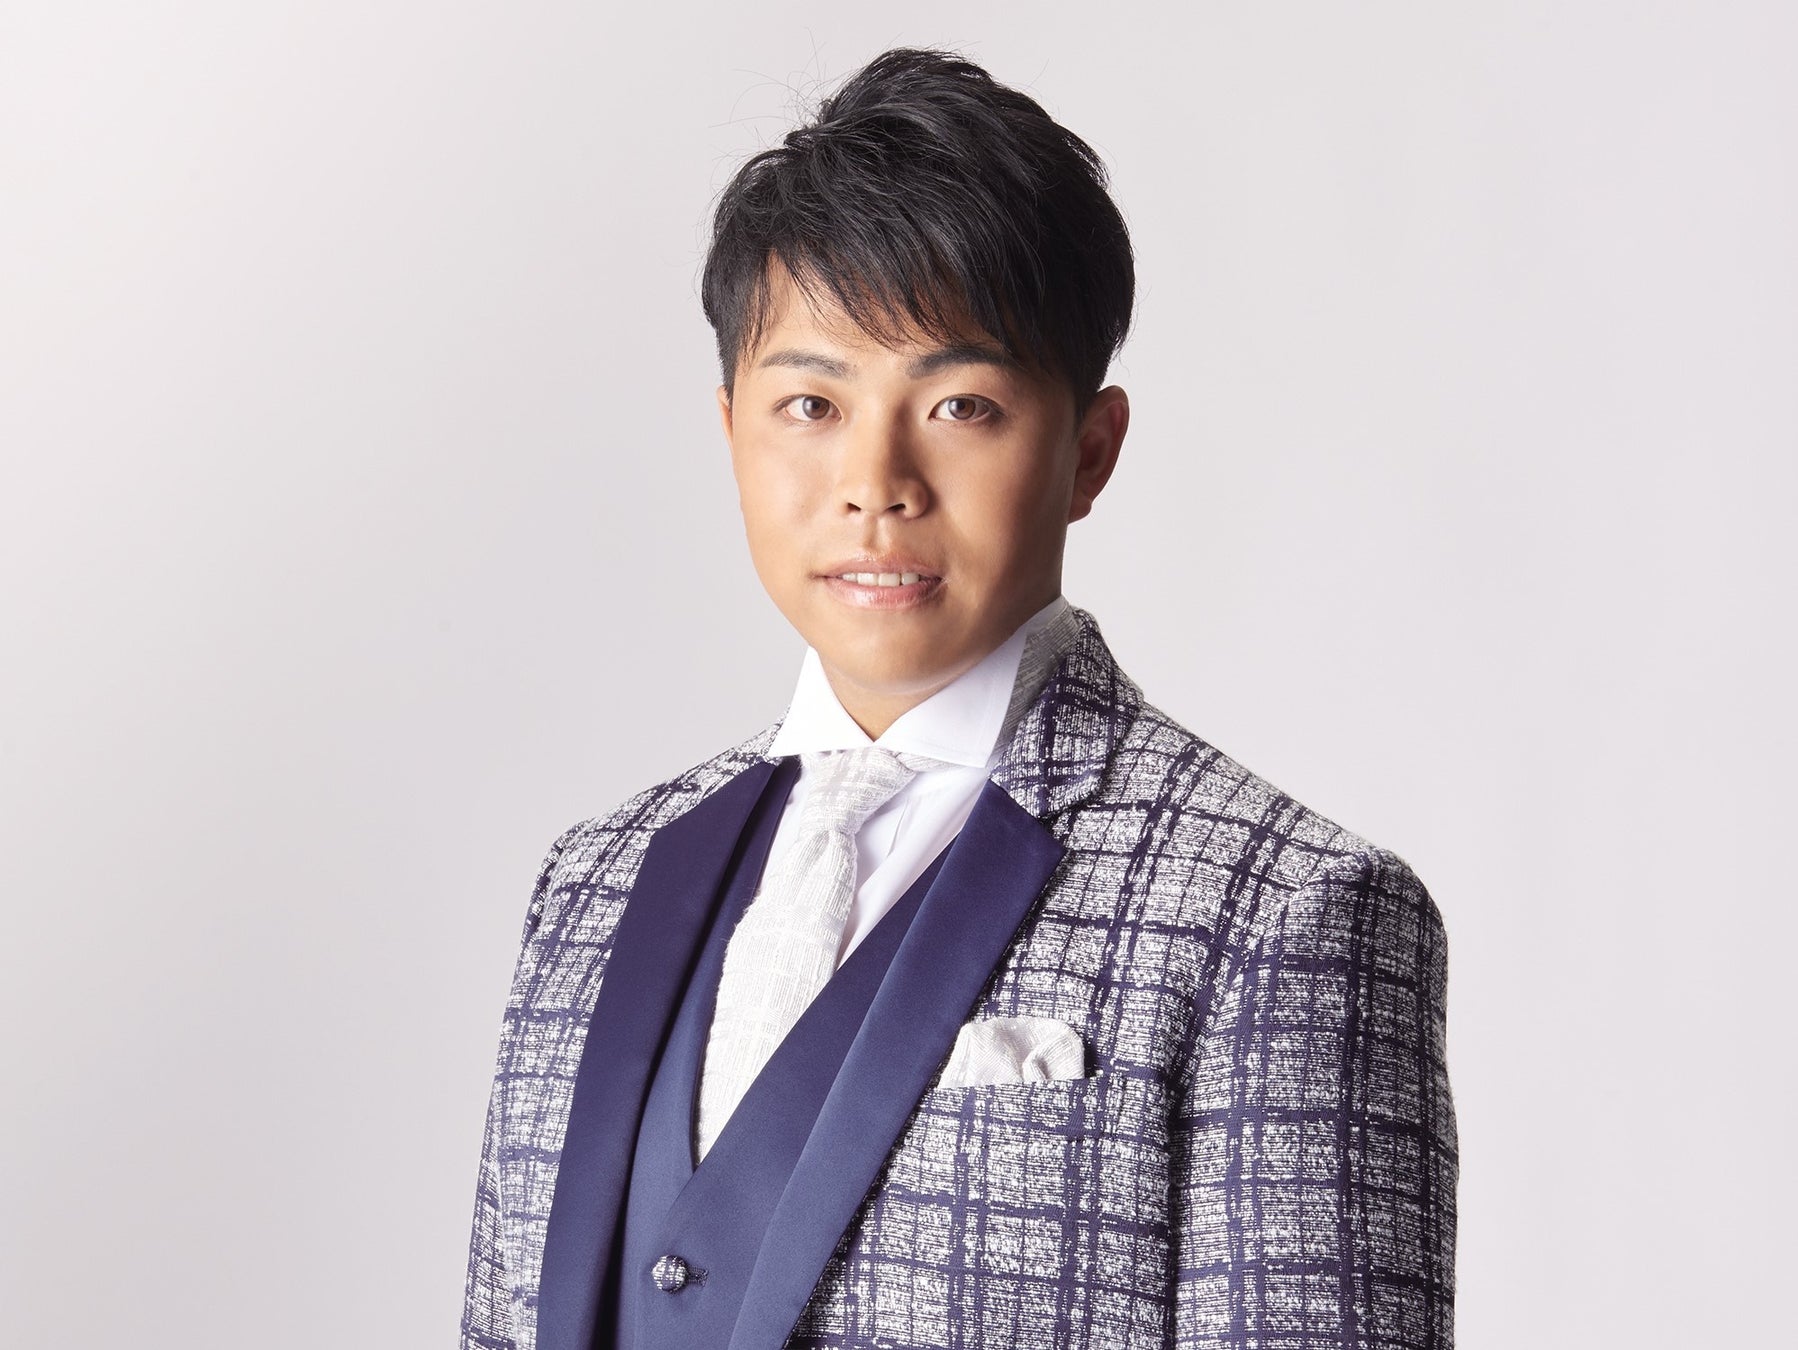 デビュー後にコロナ禍となった演歌歌手・木川尚紀が3年ぶりの新曲「下手くそな生き方だけど」発売のサブ画像1